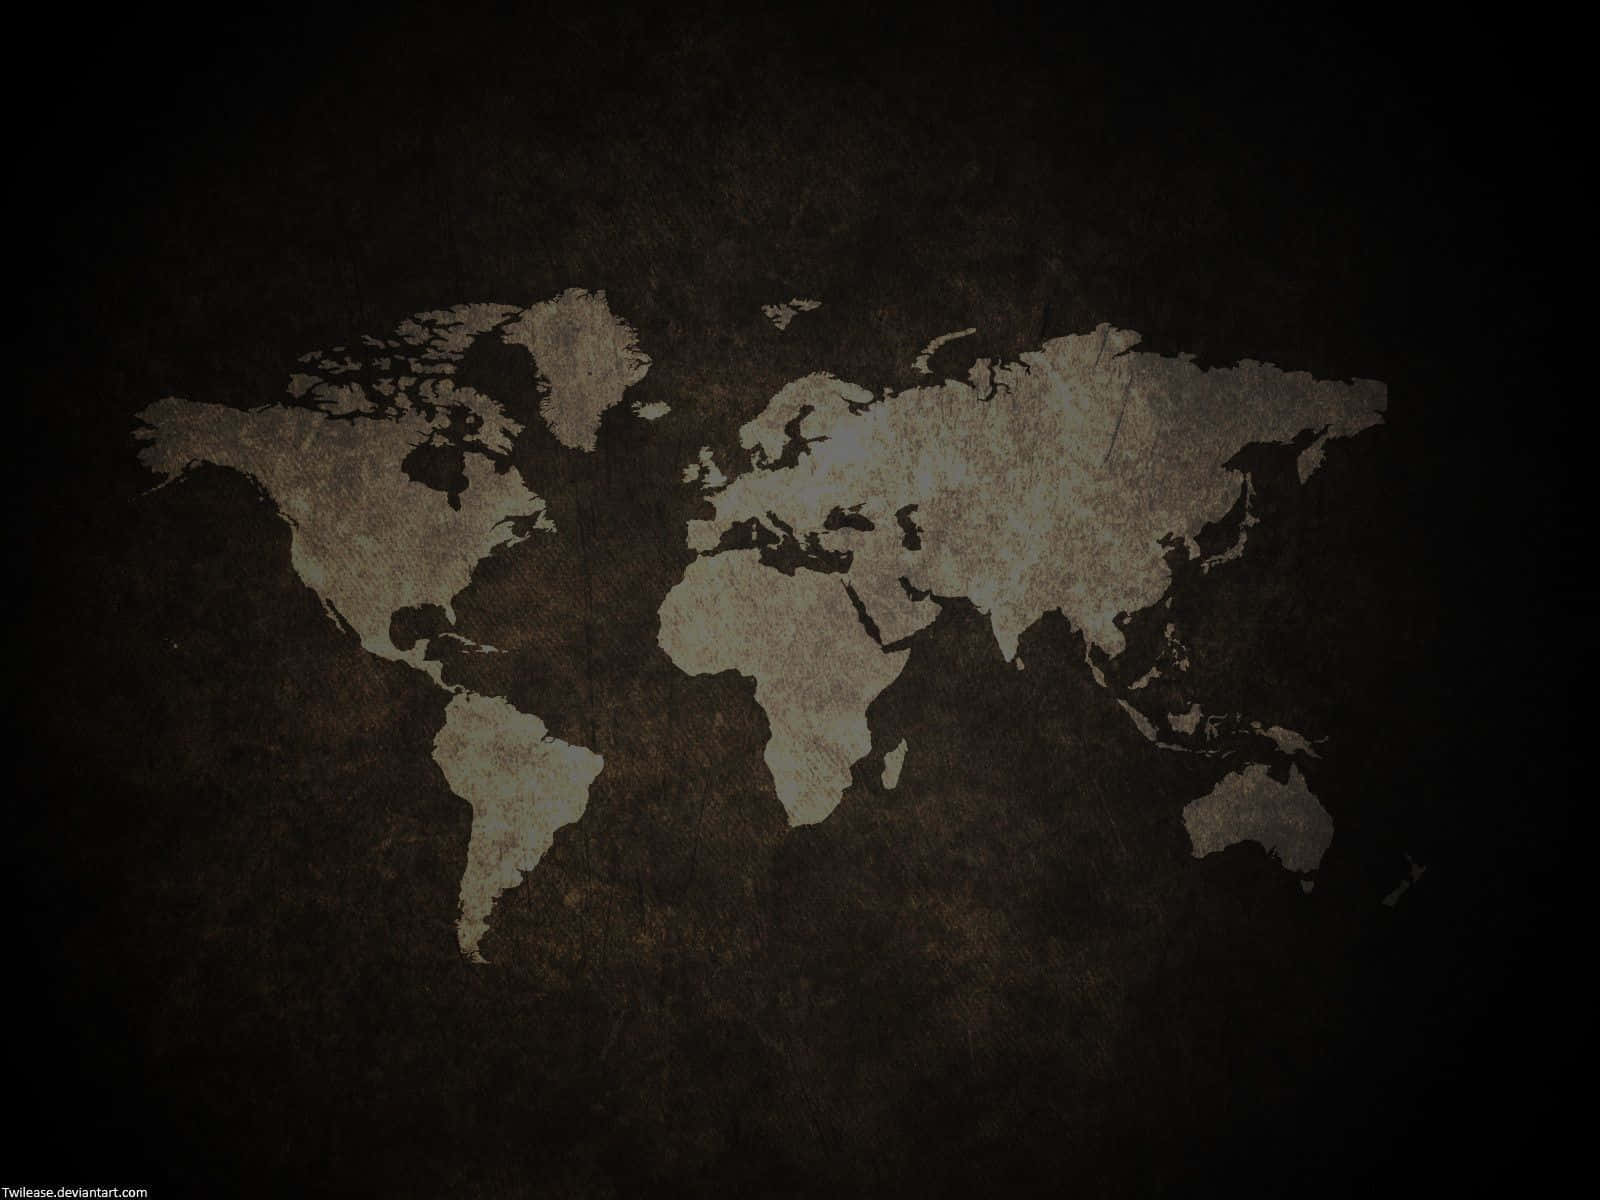 Envärldskarta På Svart Bakgrund